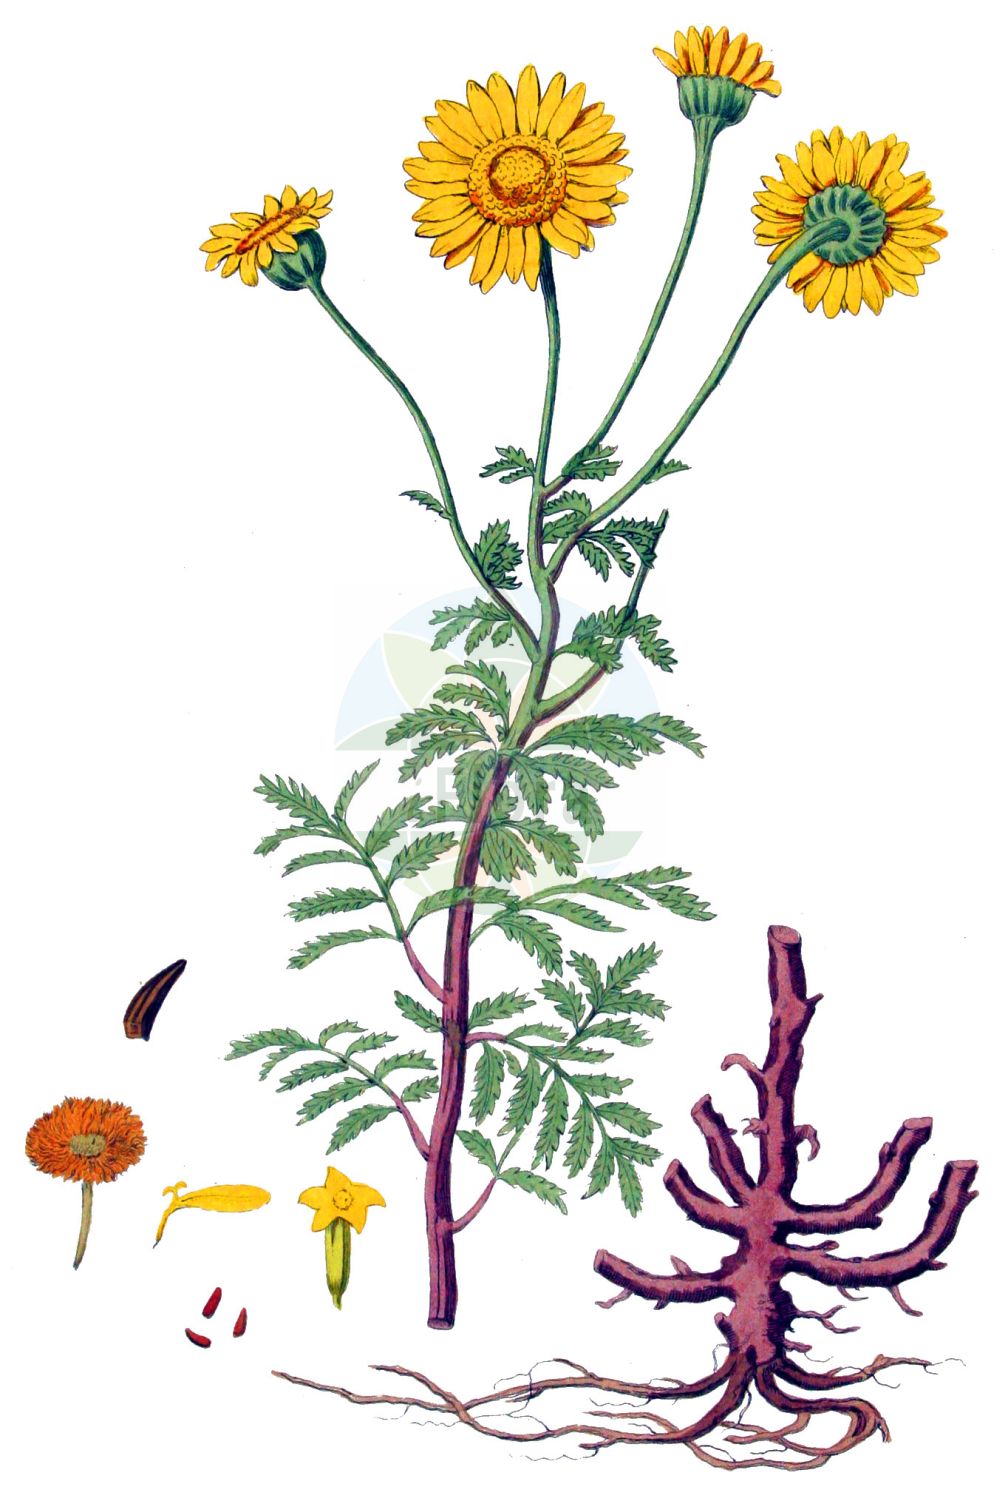 Historische Abbildung von Cota tinctoria (Färber-Hundskamille - Yellow Chamomile). Das Bild zeigt Blatt, Bluete, Frucht und Same. ---- Historical Drawing of Cota tinctoria (Färber-Hundskamille - Yellow Chamomile). The image is showing leaf, flower, fruit and seed.(Cota tinctoria,Färber-Hundskamille,Yellow Chamomile,Anthemis brachyglossa,Anthemis debilis,Anthemis discoidea,Anthemis maris-nigri,Anthemis markhotensis,Anthemis subtinctoria,Anthemis tinctoria,Anthemis zephyrovii,Chamaemelum discoideum,Cota tinctoria,Cota tinctoria subsp. subtinctoria,Faerber-Hundskamille,Yellow Chamomile,Dyer's Chamomile,Golden Chamomile,Cota,Asteraceae,Korbblütengewächse,Daisy family,Blatt,Bluete,Frucht,Same,leaf,flower,fruit,seed,Kops (1800-1934))